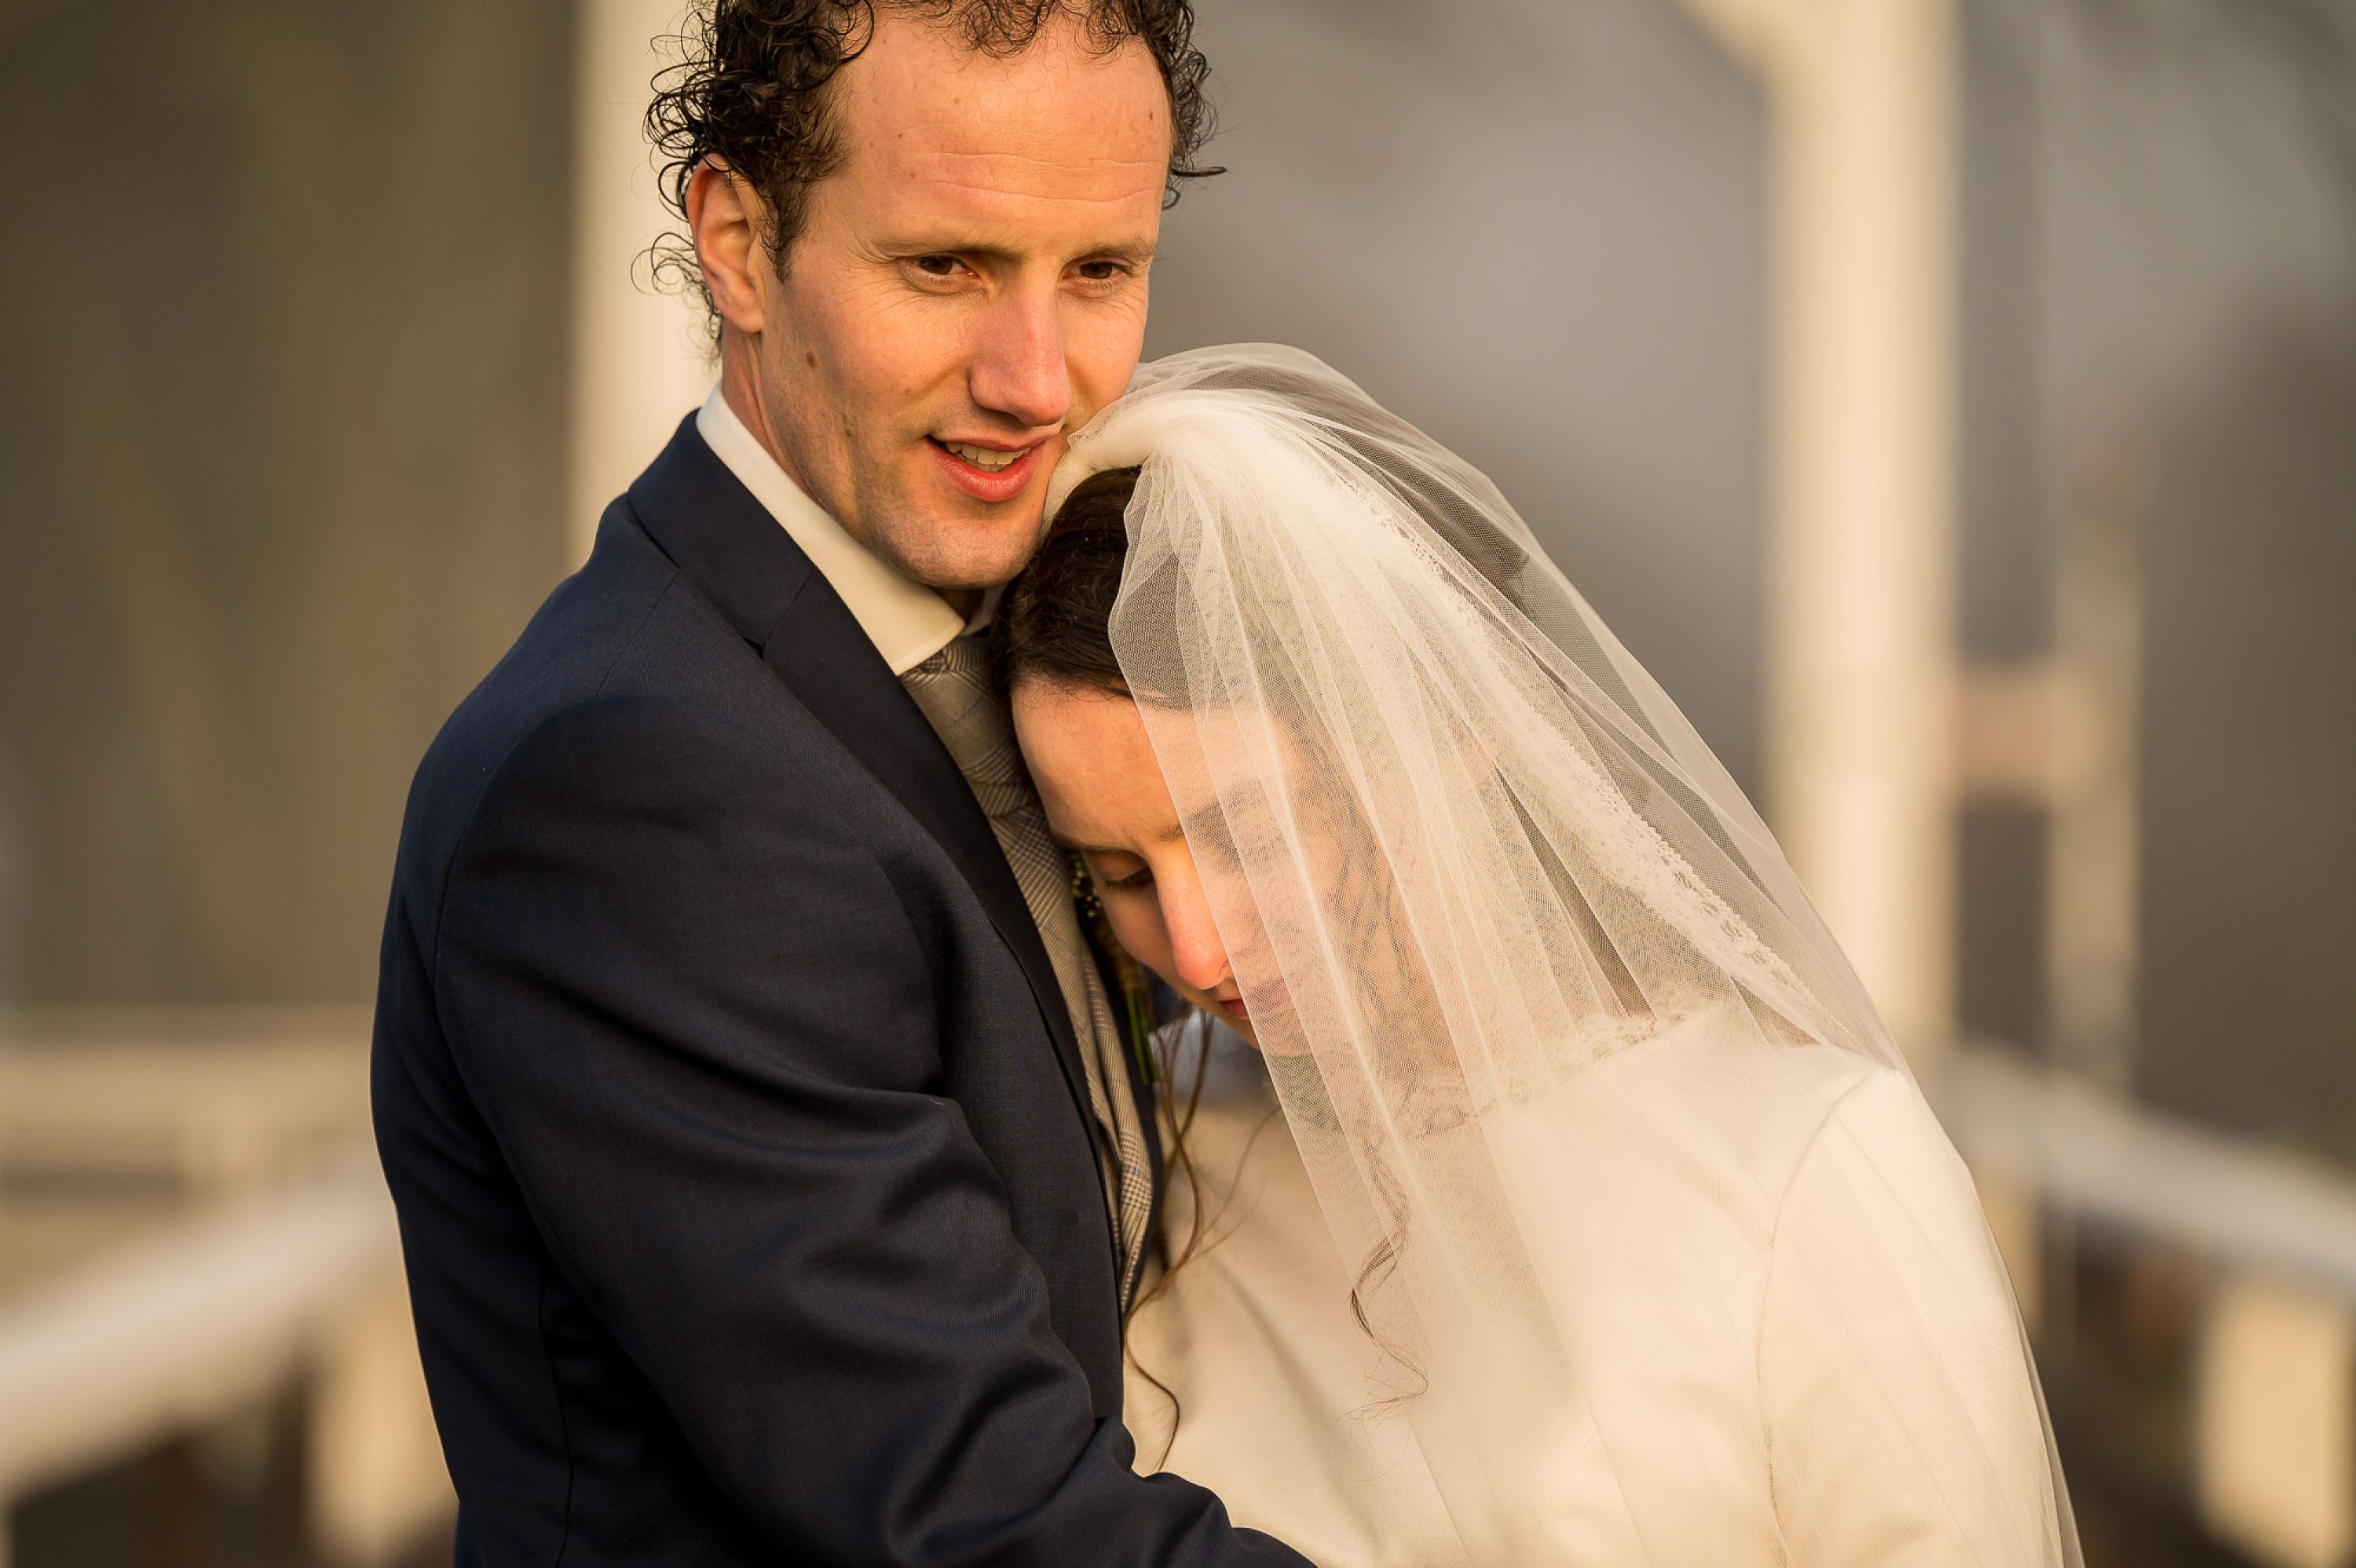 Daan-Henrieke-Jan-van-de-Maat-bruidsfotografie-trouwfotografie